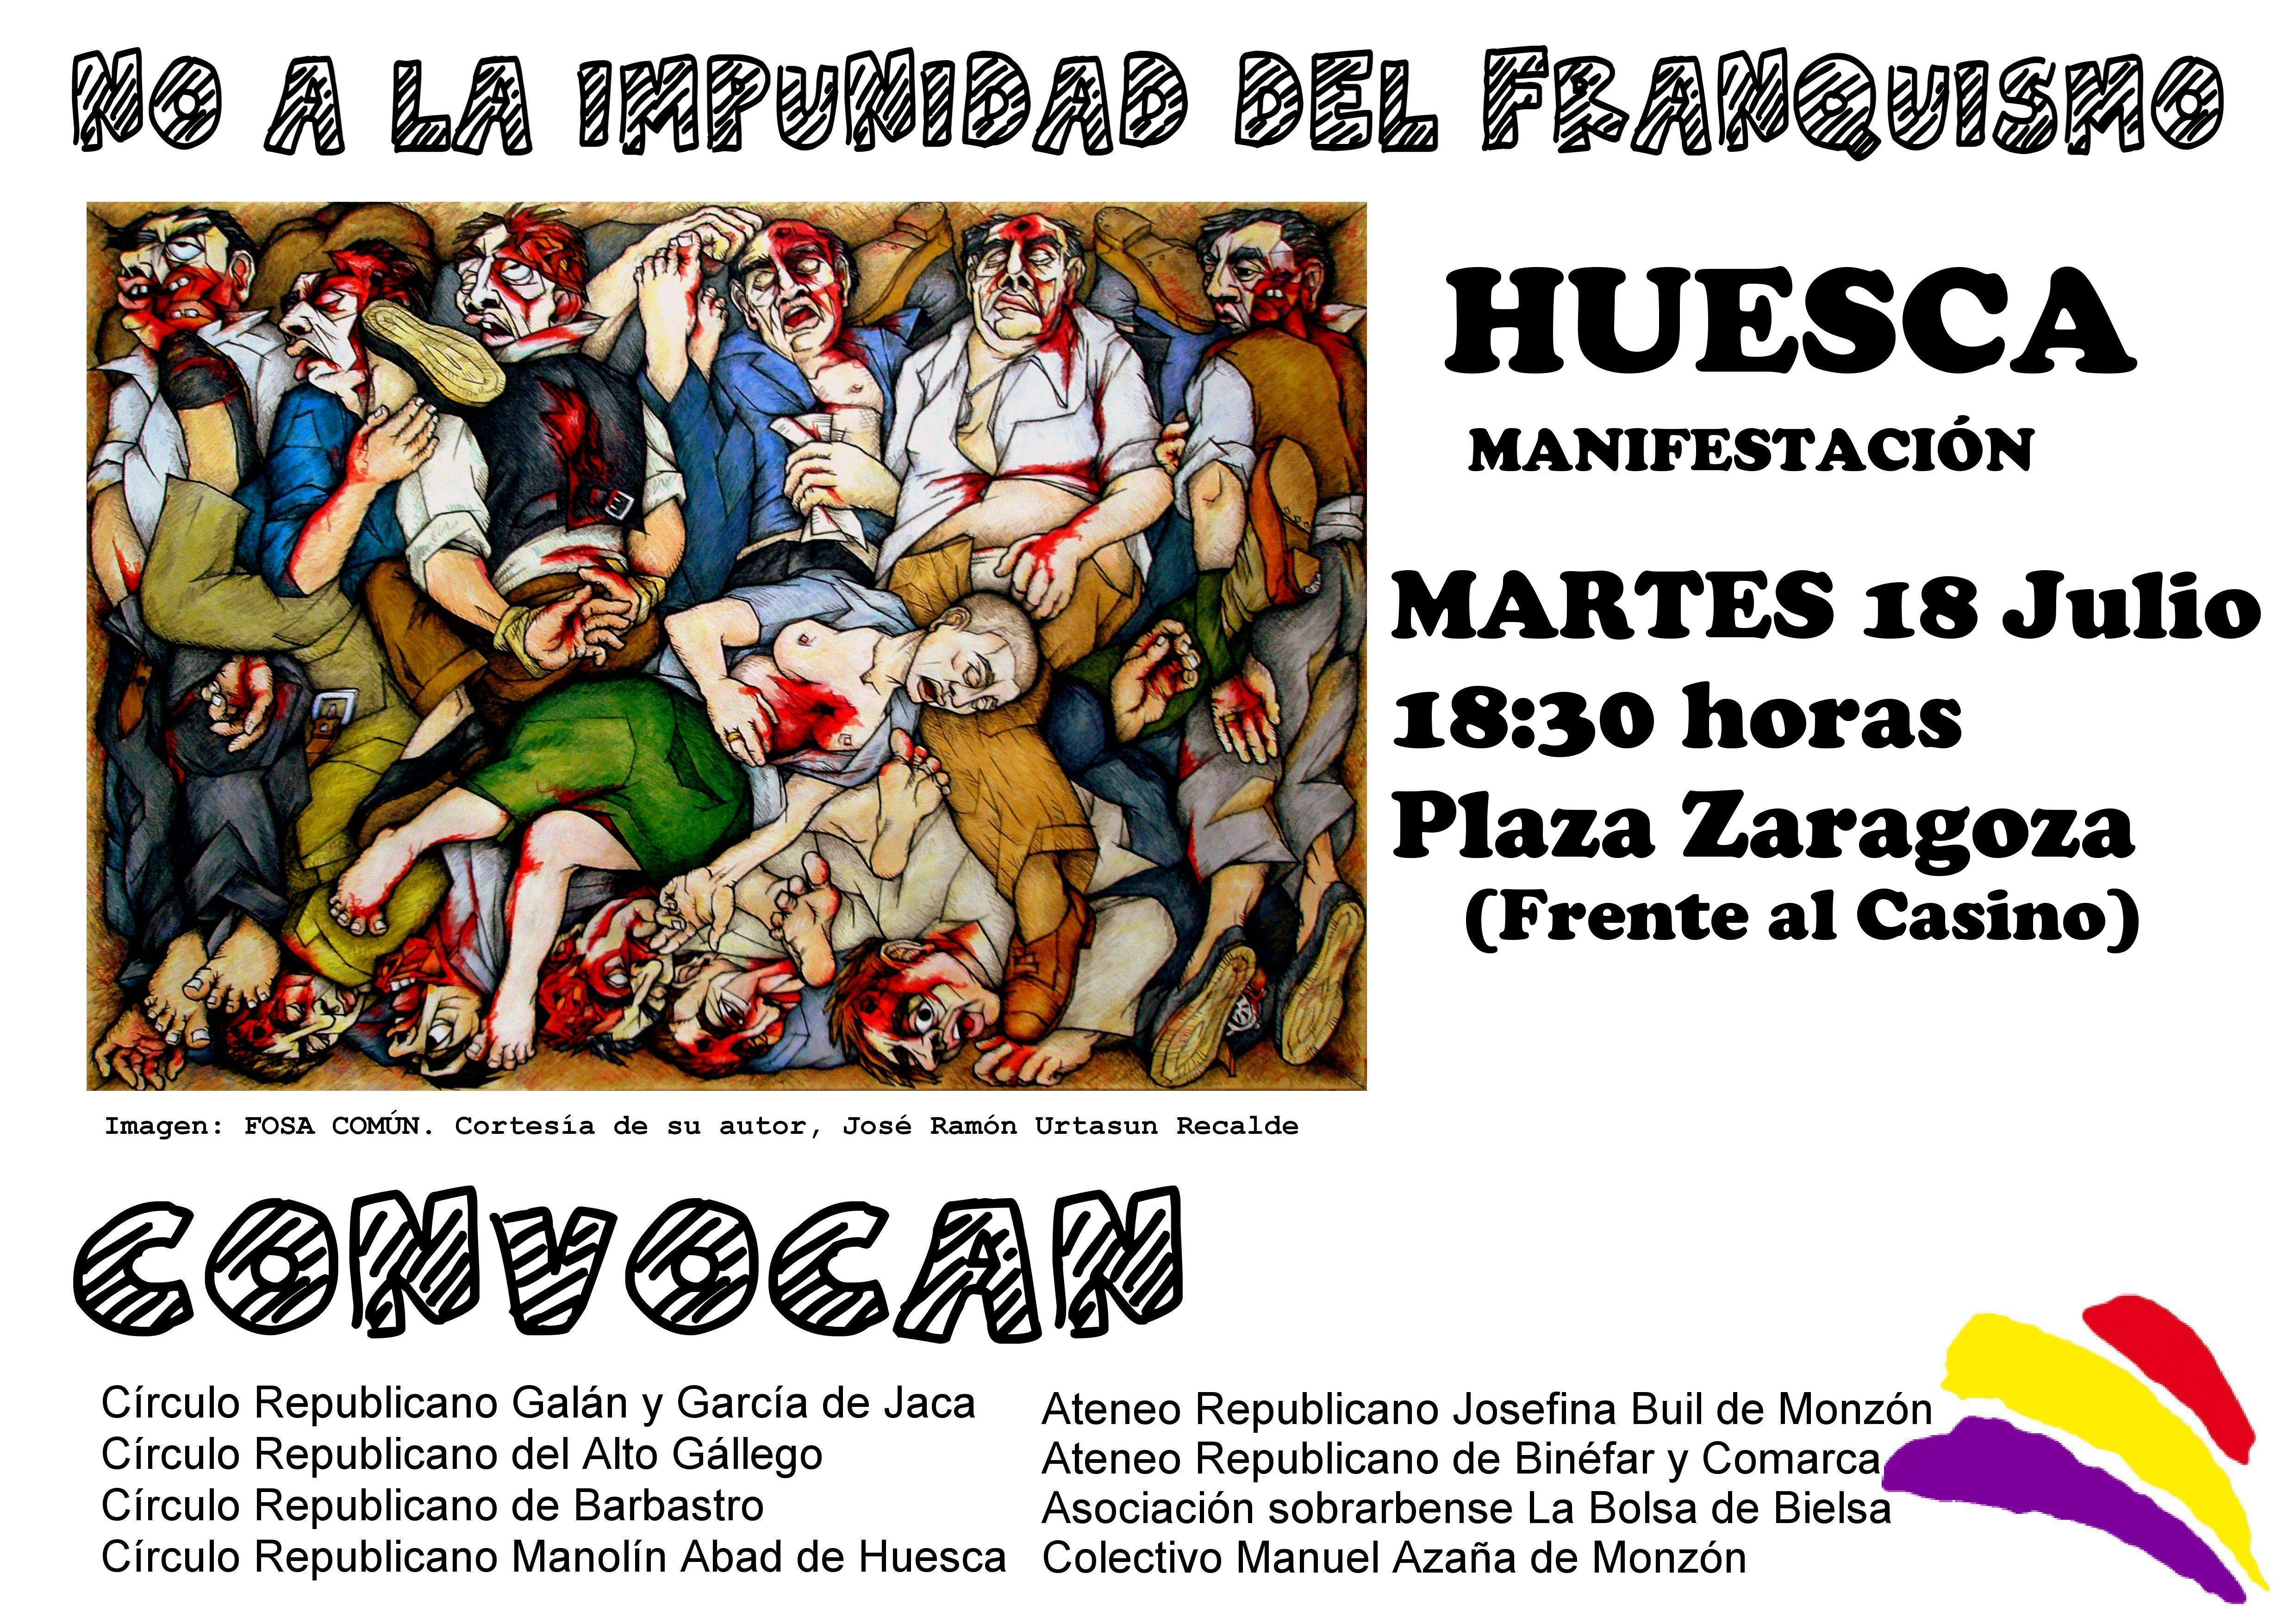 Llamamiento a la participación en la manifestación organizada en Huesca contra la impunidad del Franquismo